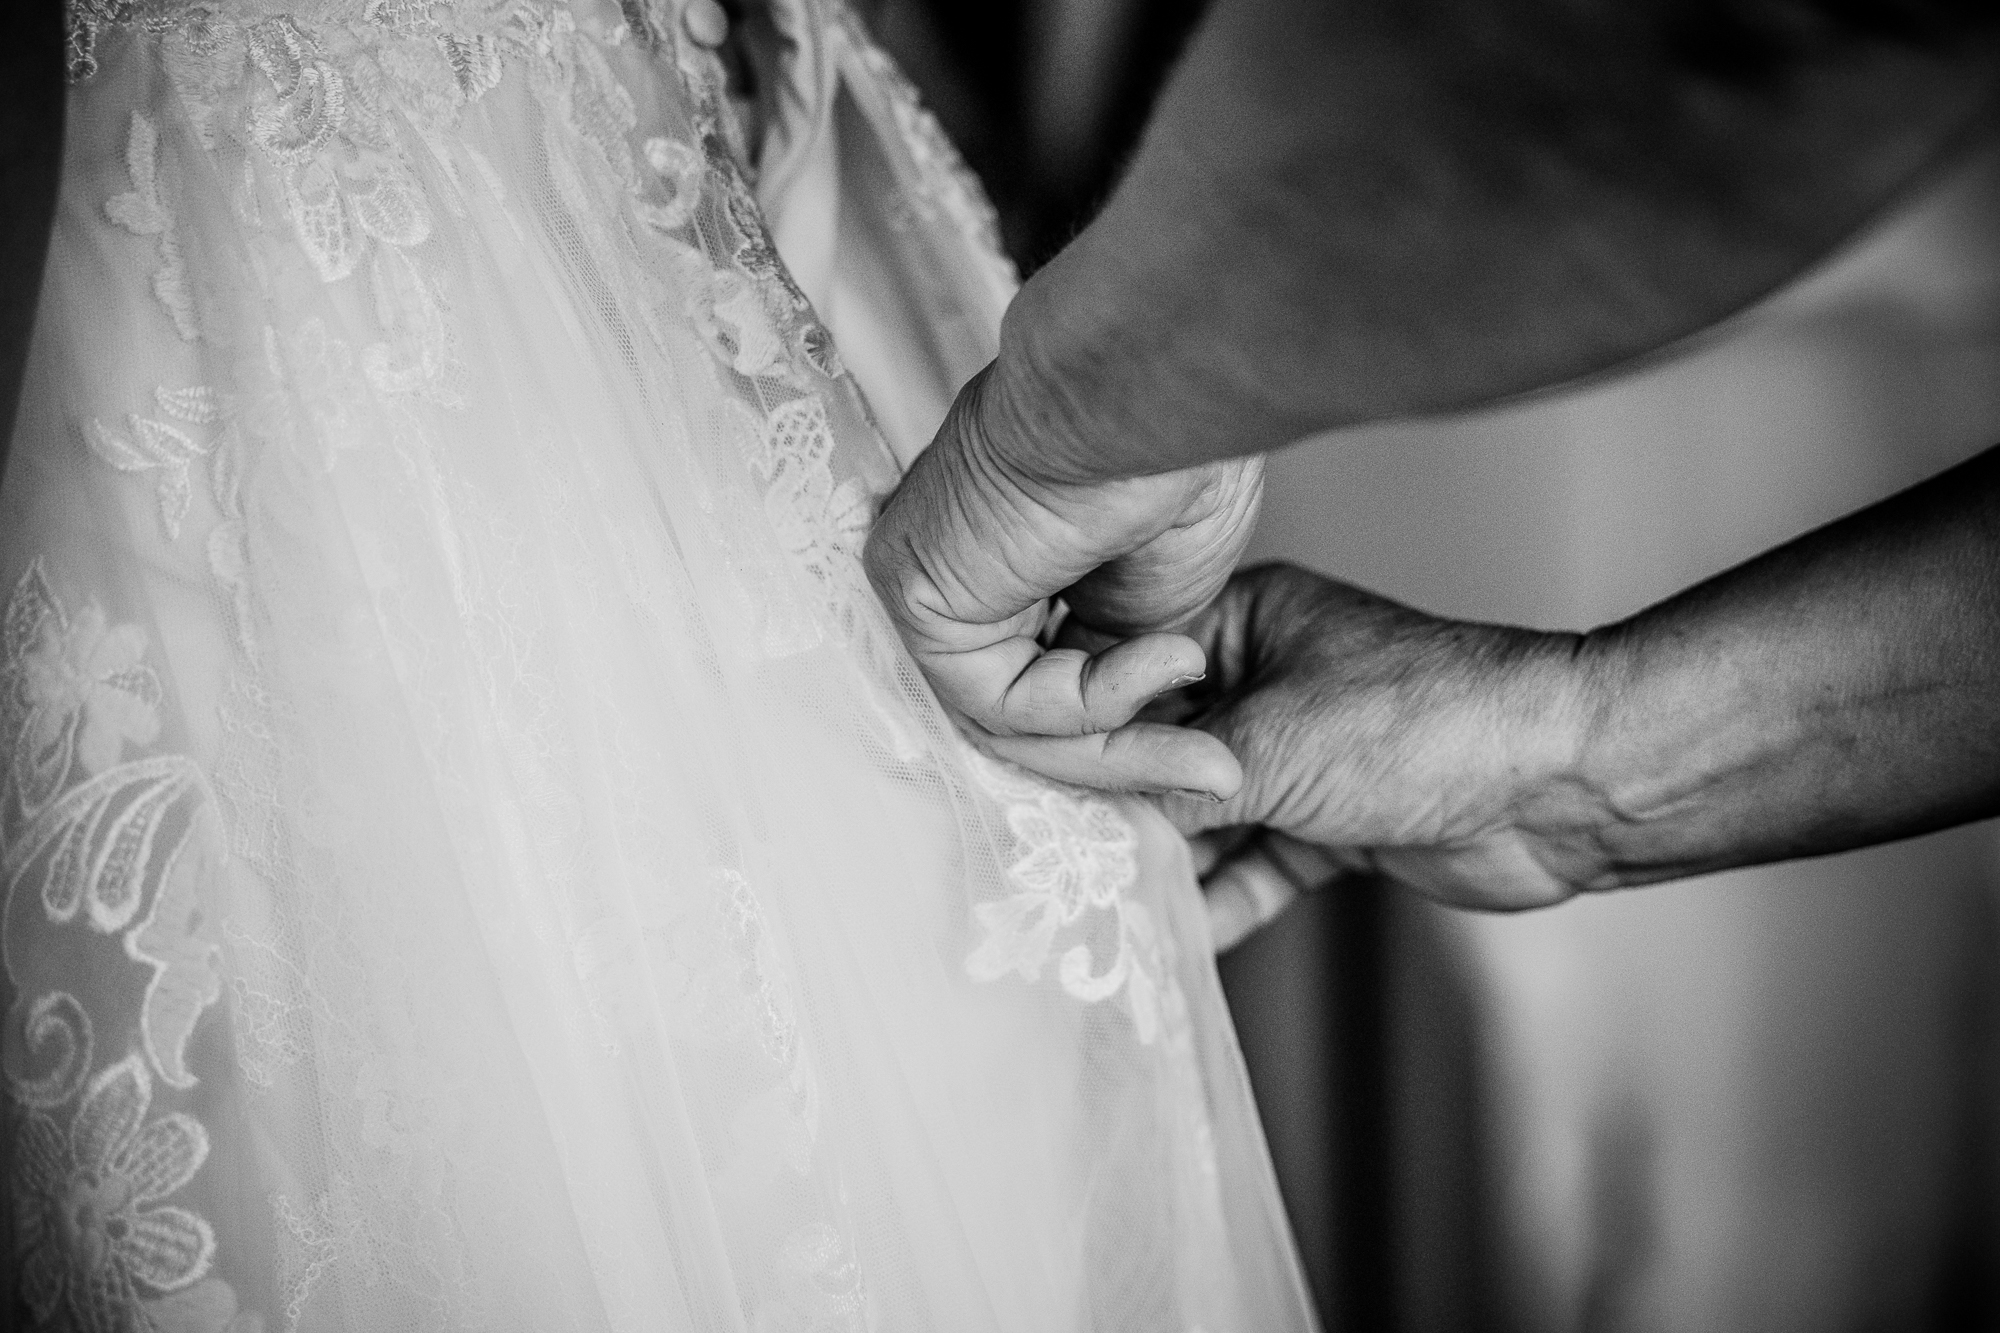 Zwartwit huwelijksreportage door huwelijksfotograaf Nickie Fotografie uit Friesland. Moeder helpt bij het aankleden van de bruid.